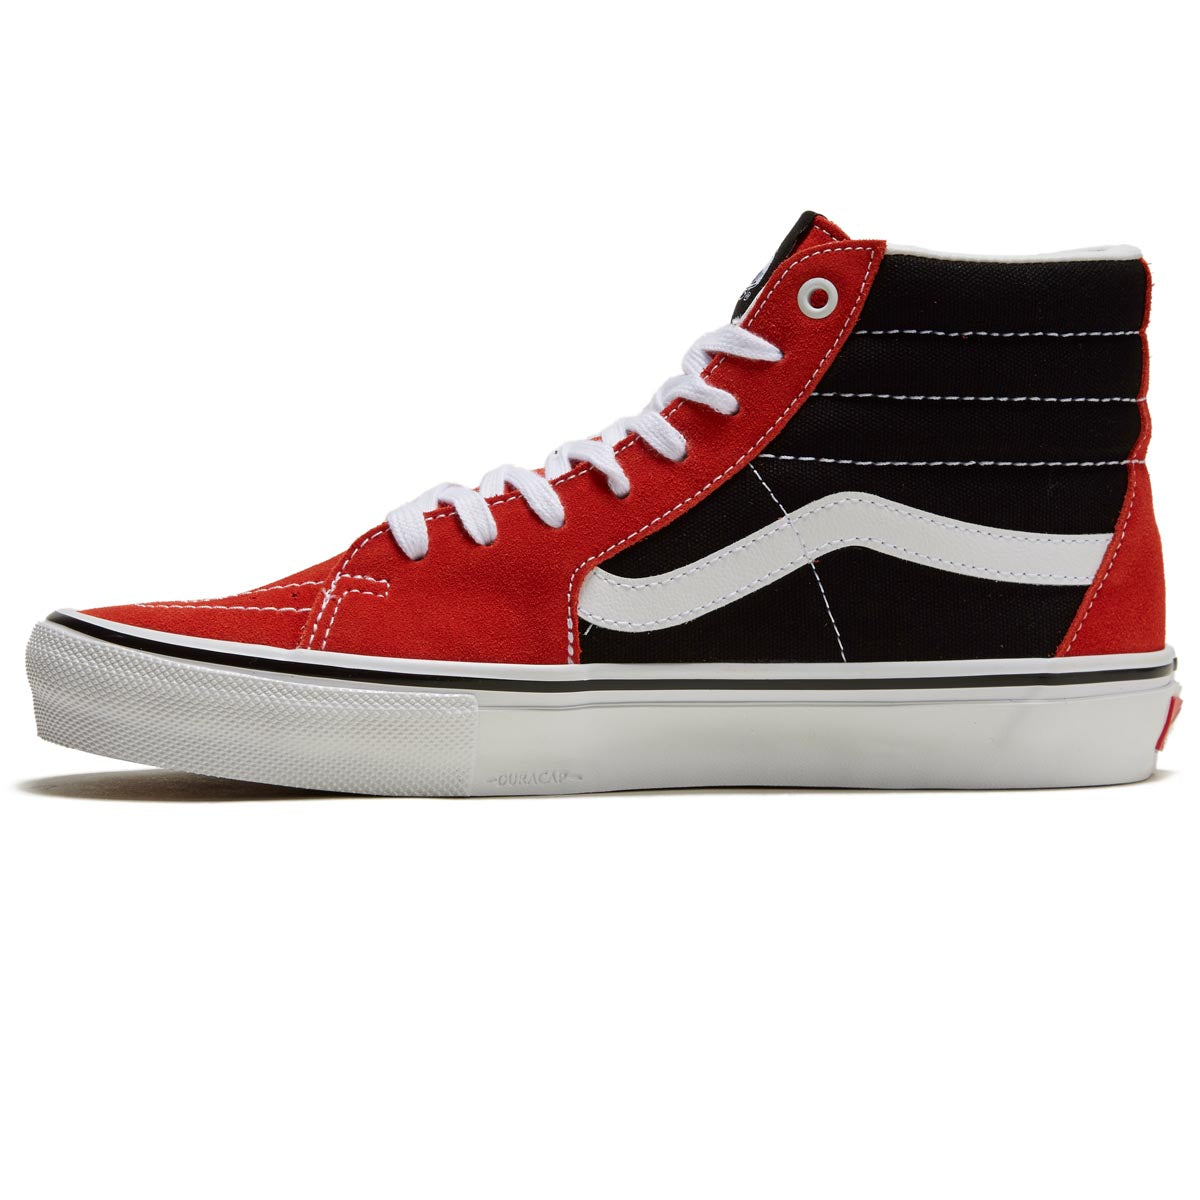 Vans Skate Sk8-Hi Shoes - Red/Black image 2